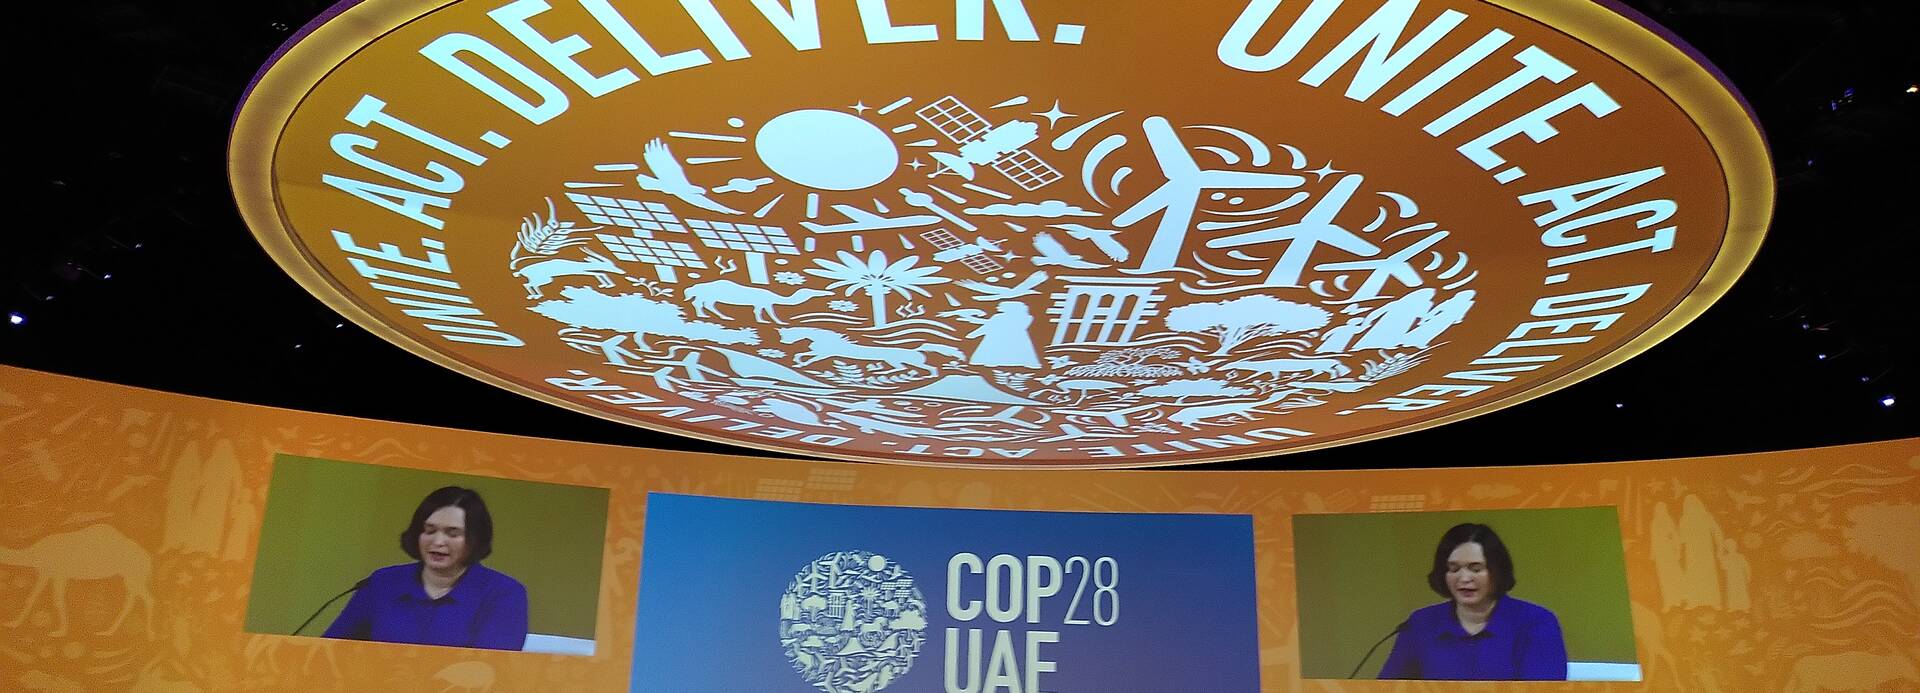 Im Plenarsaal der Klimakonferenz in Dubai sitzen die Vertreter*innen der Staaten und hören der Sprecherin vorne zu. Über allen wölbt sich eine große Kuppel mit der Aufschrift "Unite, Act, Deliver".